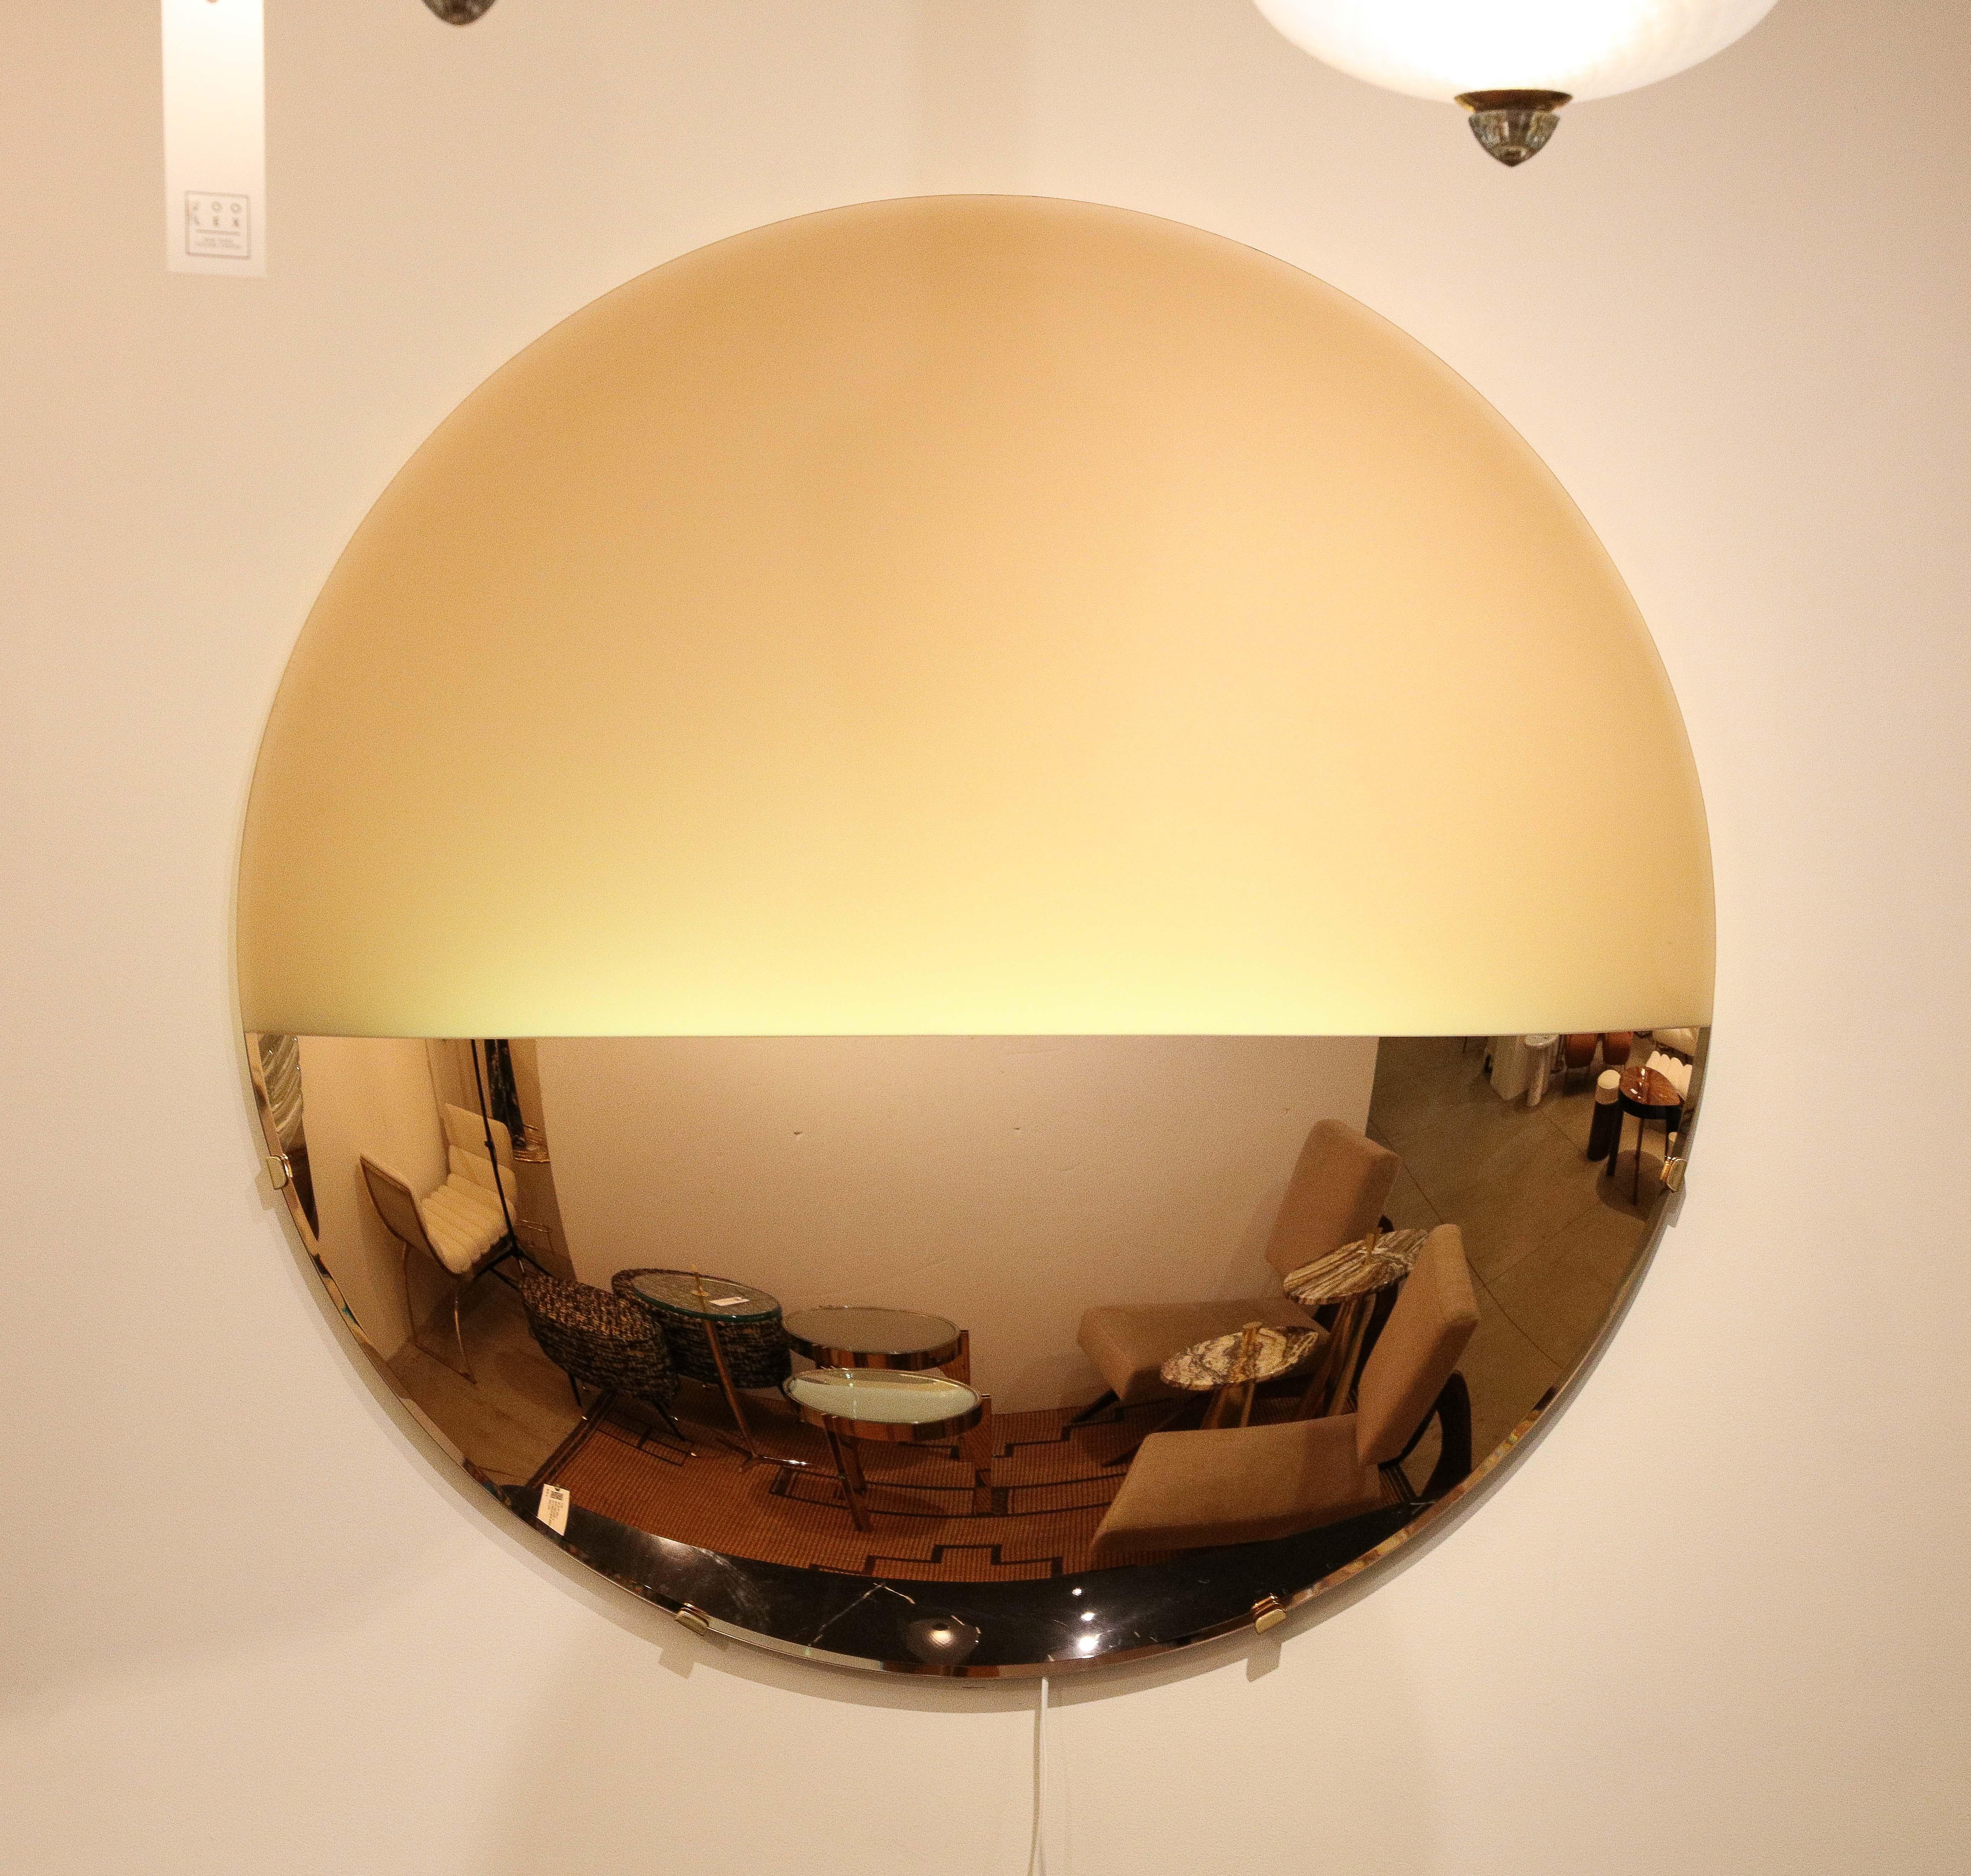 Ce grand miroir sculptural rond convexe en or rose éclairé ou art mural est une œuvre d'art unique.  Un grand verre rond est d'abord thermoformé en une forme convexe sculpturale (c'est-à-dire que la surface ronde s'incurve vers l'extérieur comme